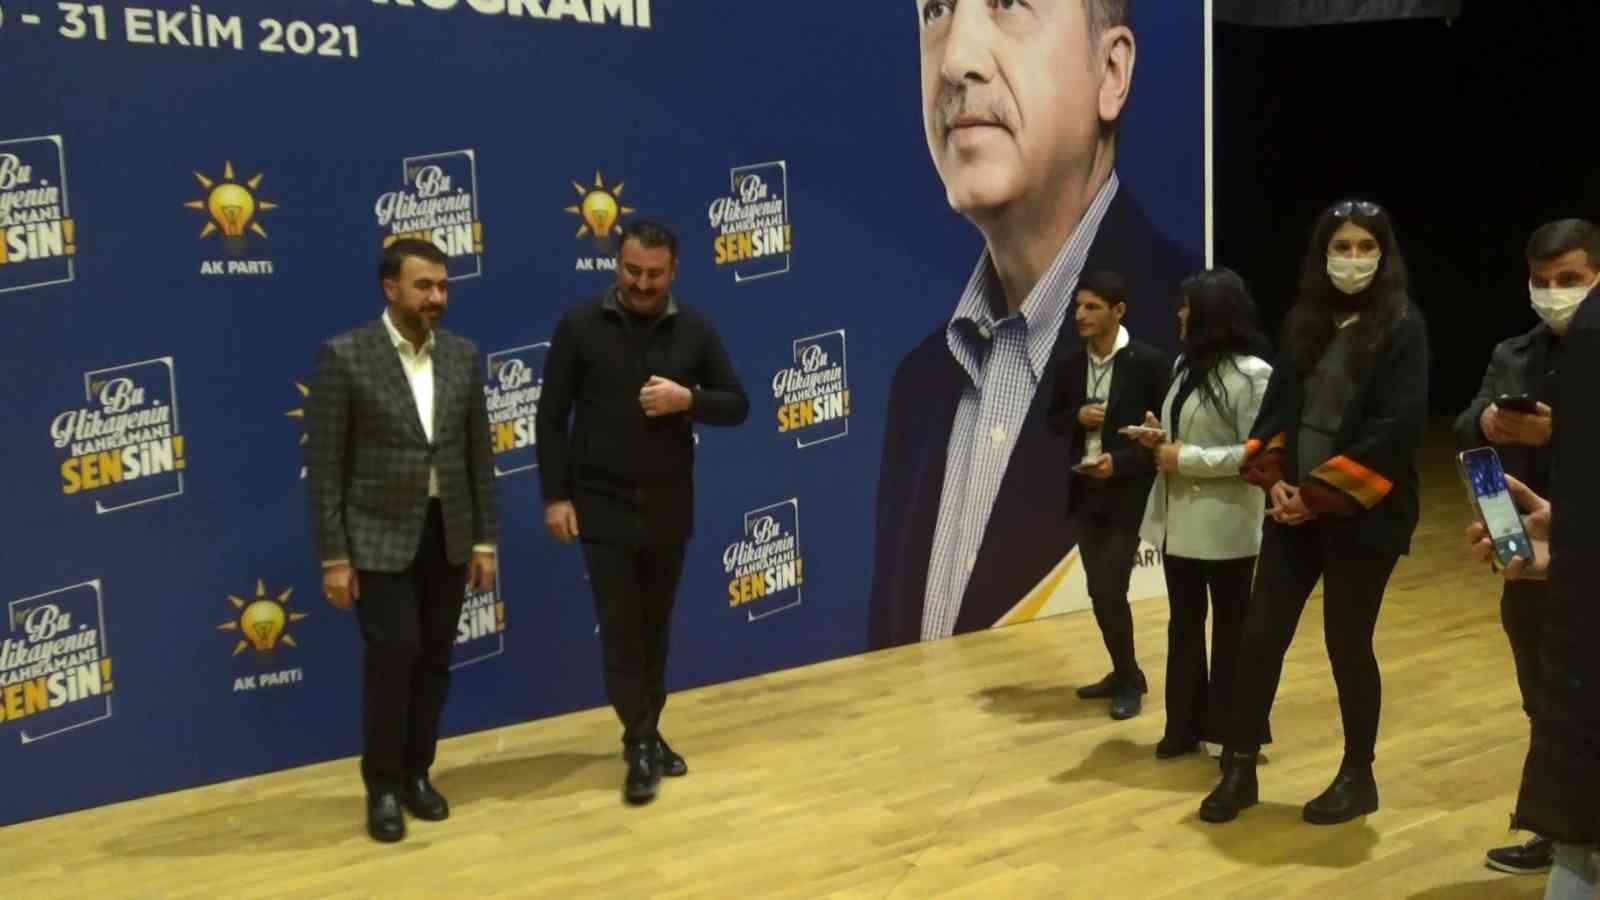 AK Parti Adana Milletvekili ve Diyarbakır İl Koordinatörü Erdinç, eğitimi değerlendirdi #diyarbakir